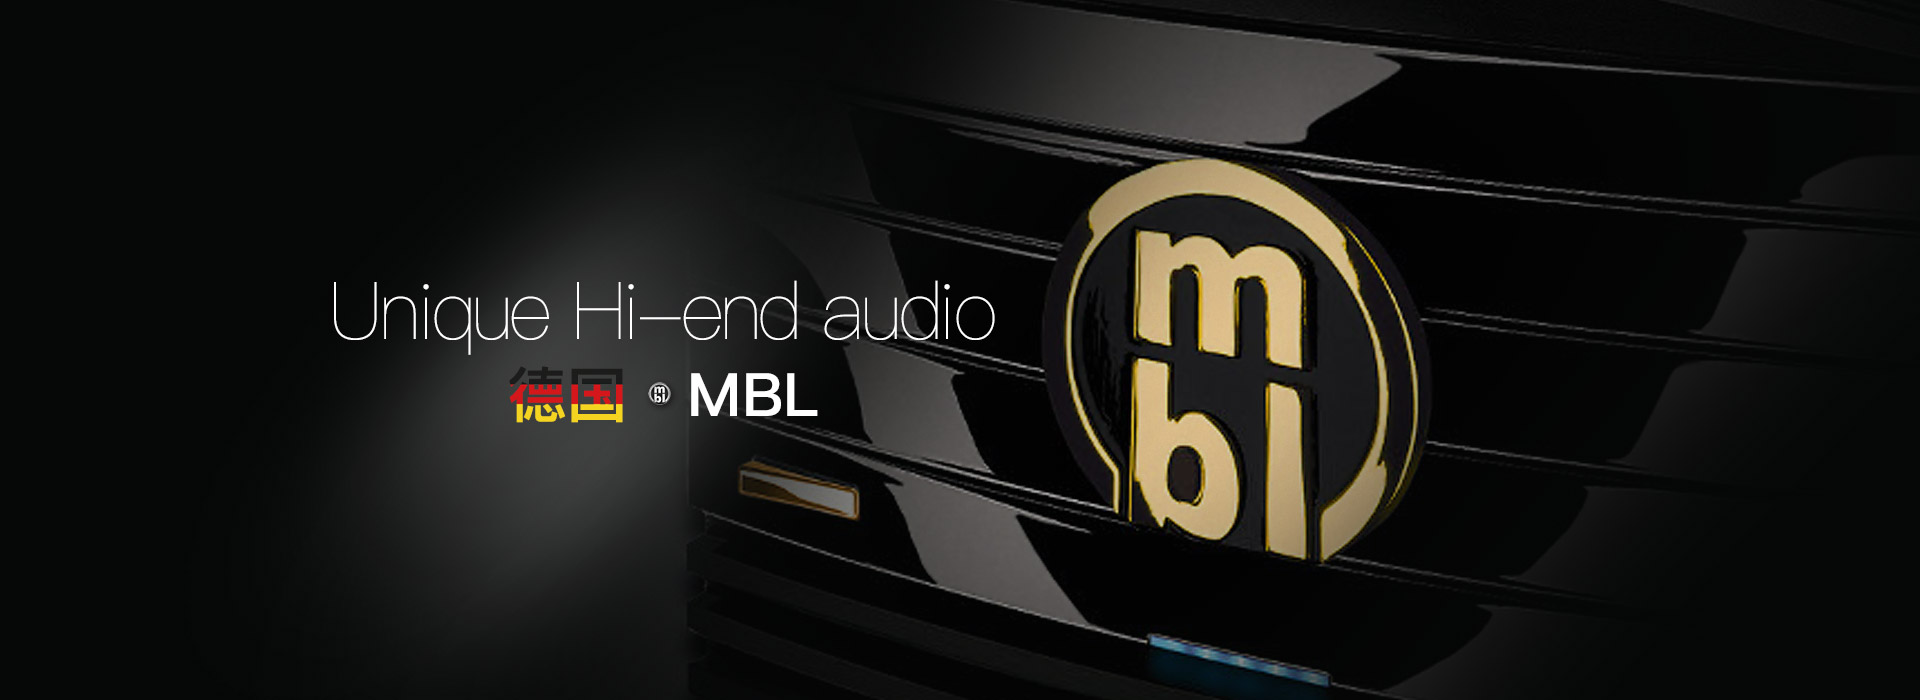 德国MBL,MBL,MBL 国内代理,MBL 6010D 前级,MBL 9008A 后级,MBL 9011 后级,MBL 音箱,MBL 功放,MBL 前级